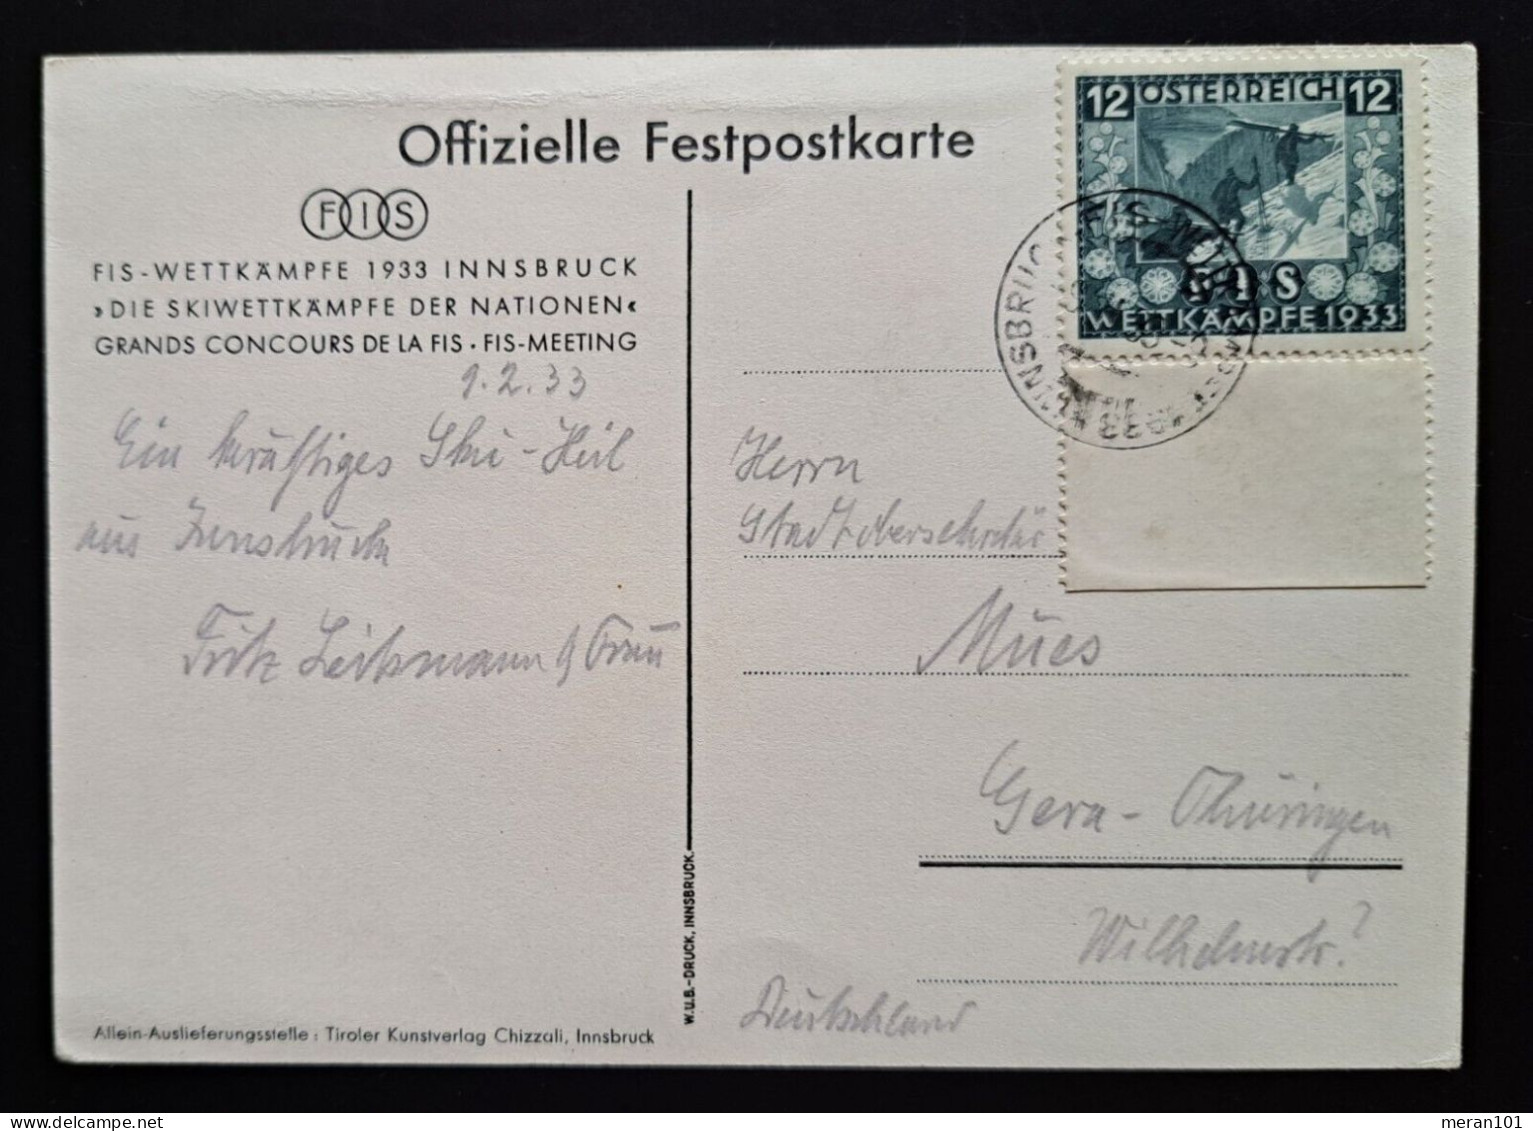 Österreich, Festpostkarte FIS- WETTKÄMPFE 1933 Mi 551 - Lettres & Documents